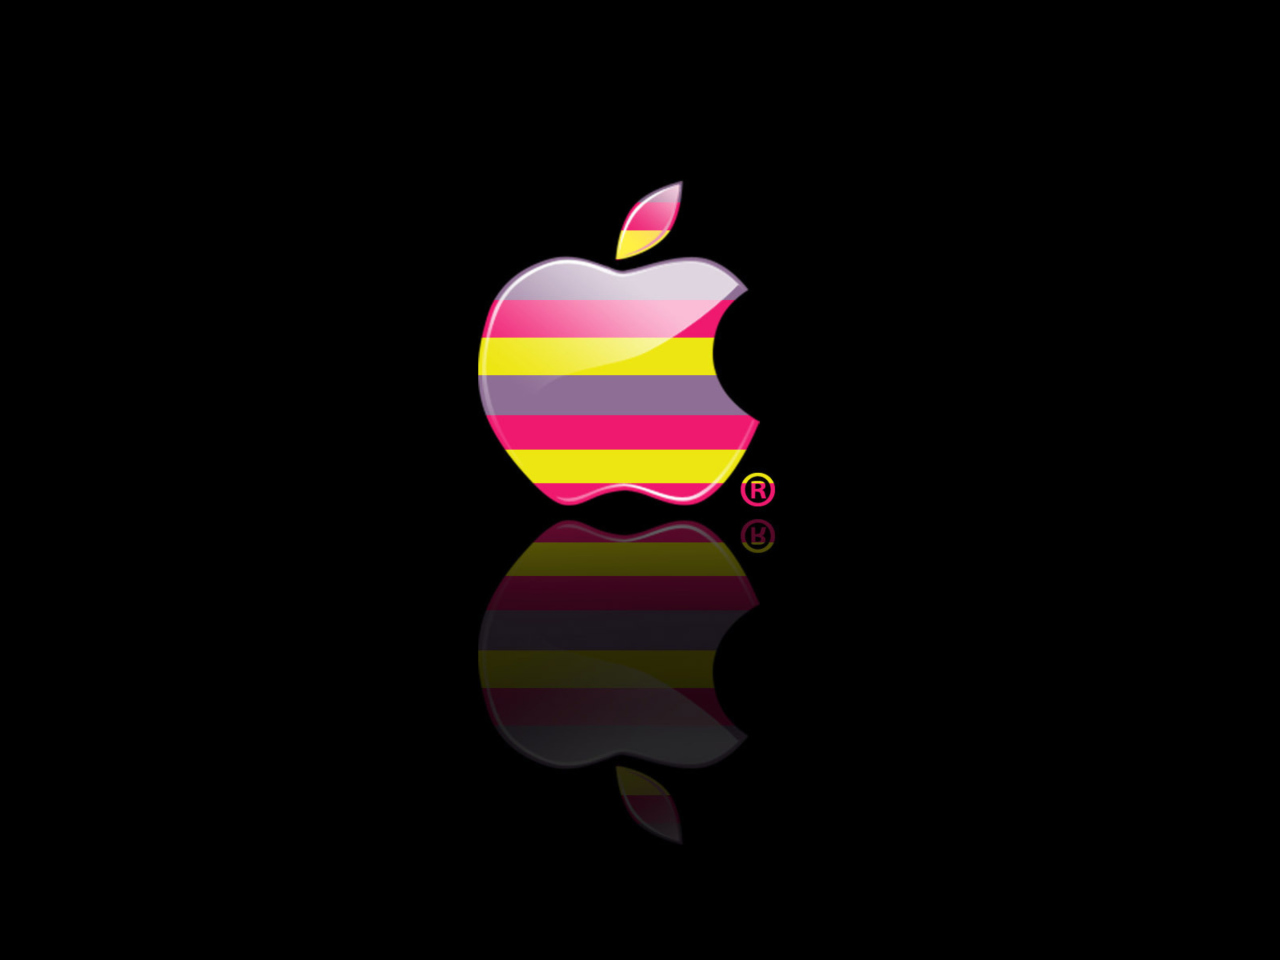 Colorful Stripes Apple Logo wallpaper 1280x960